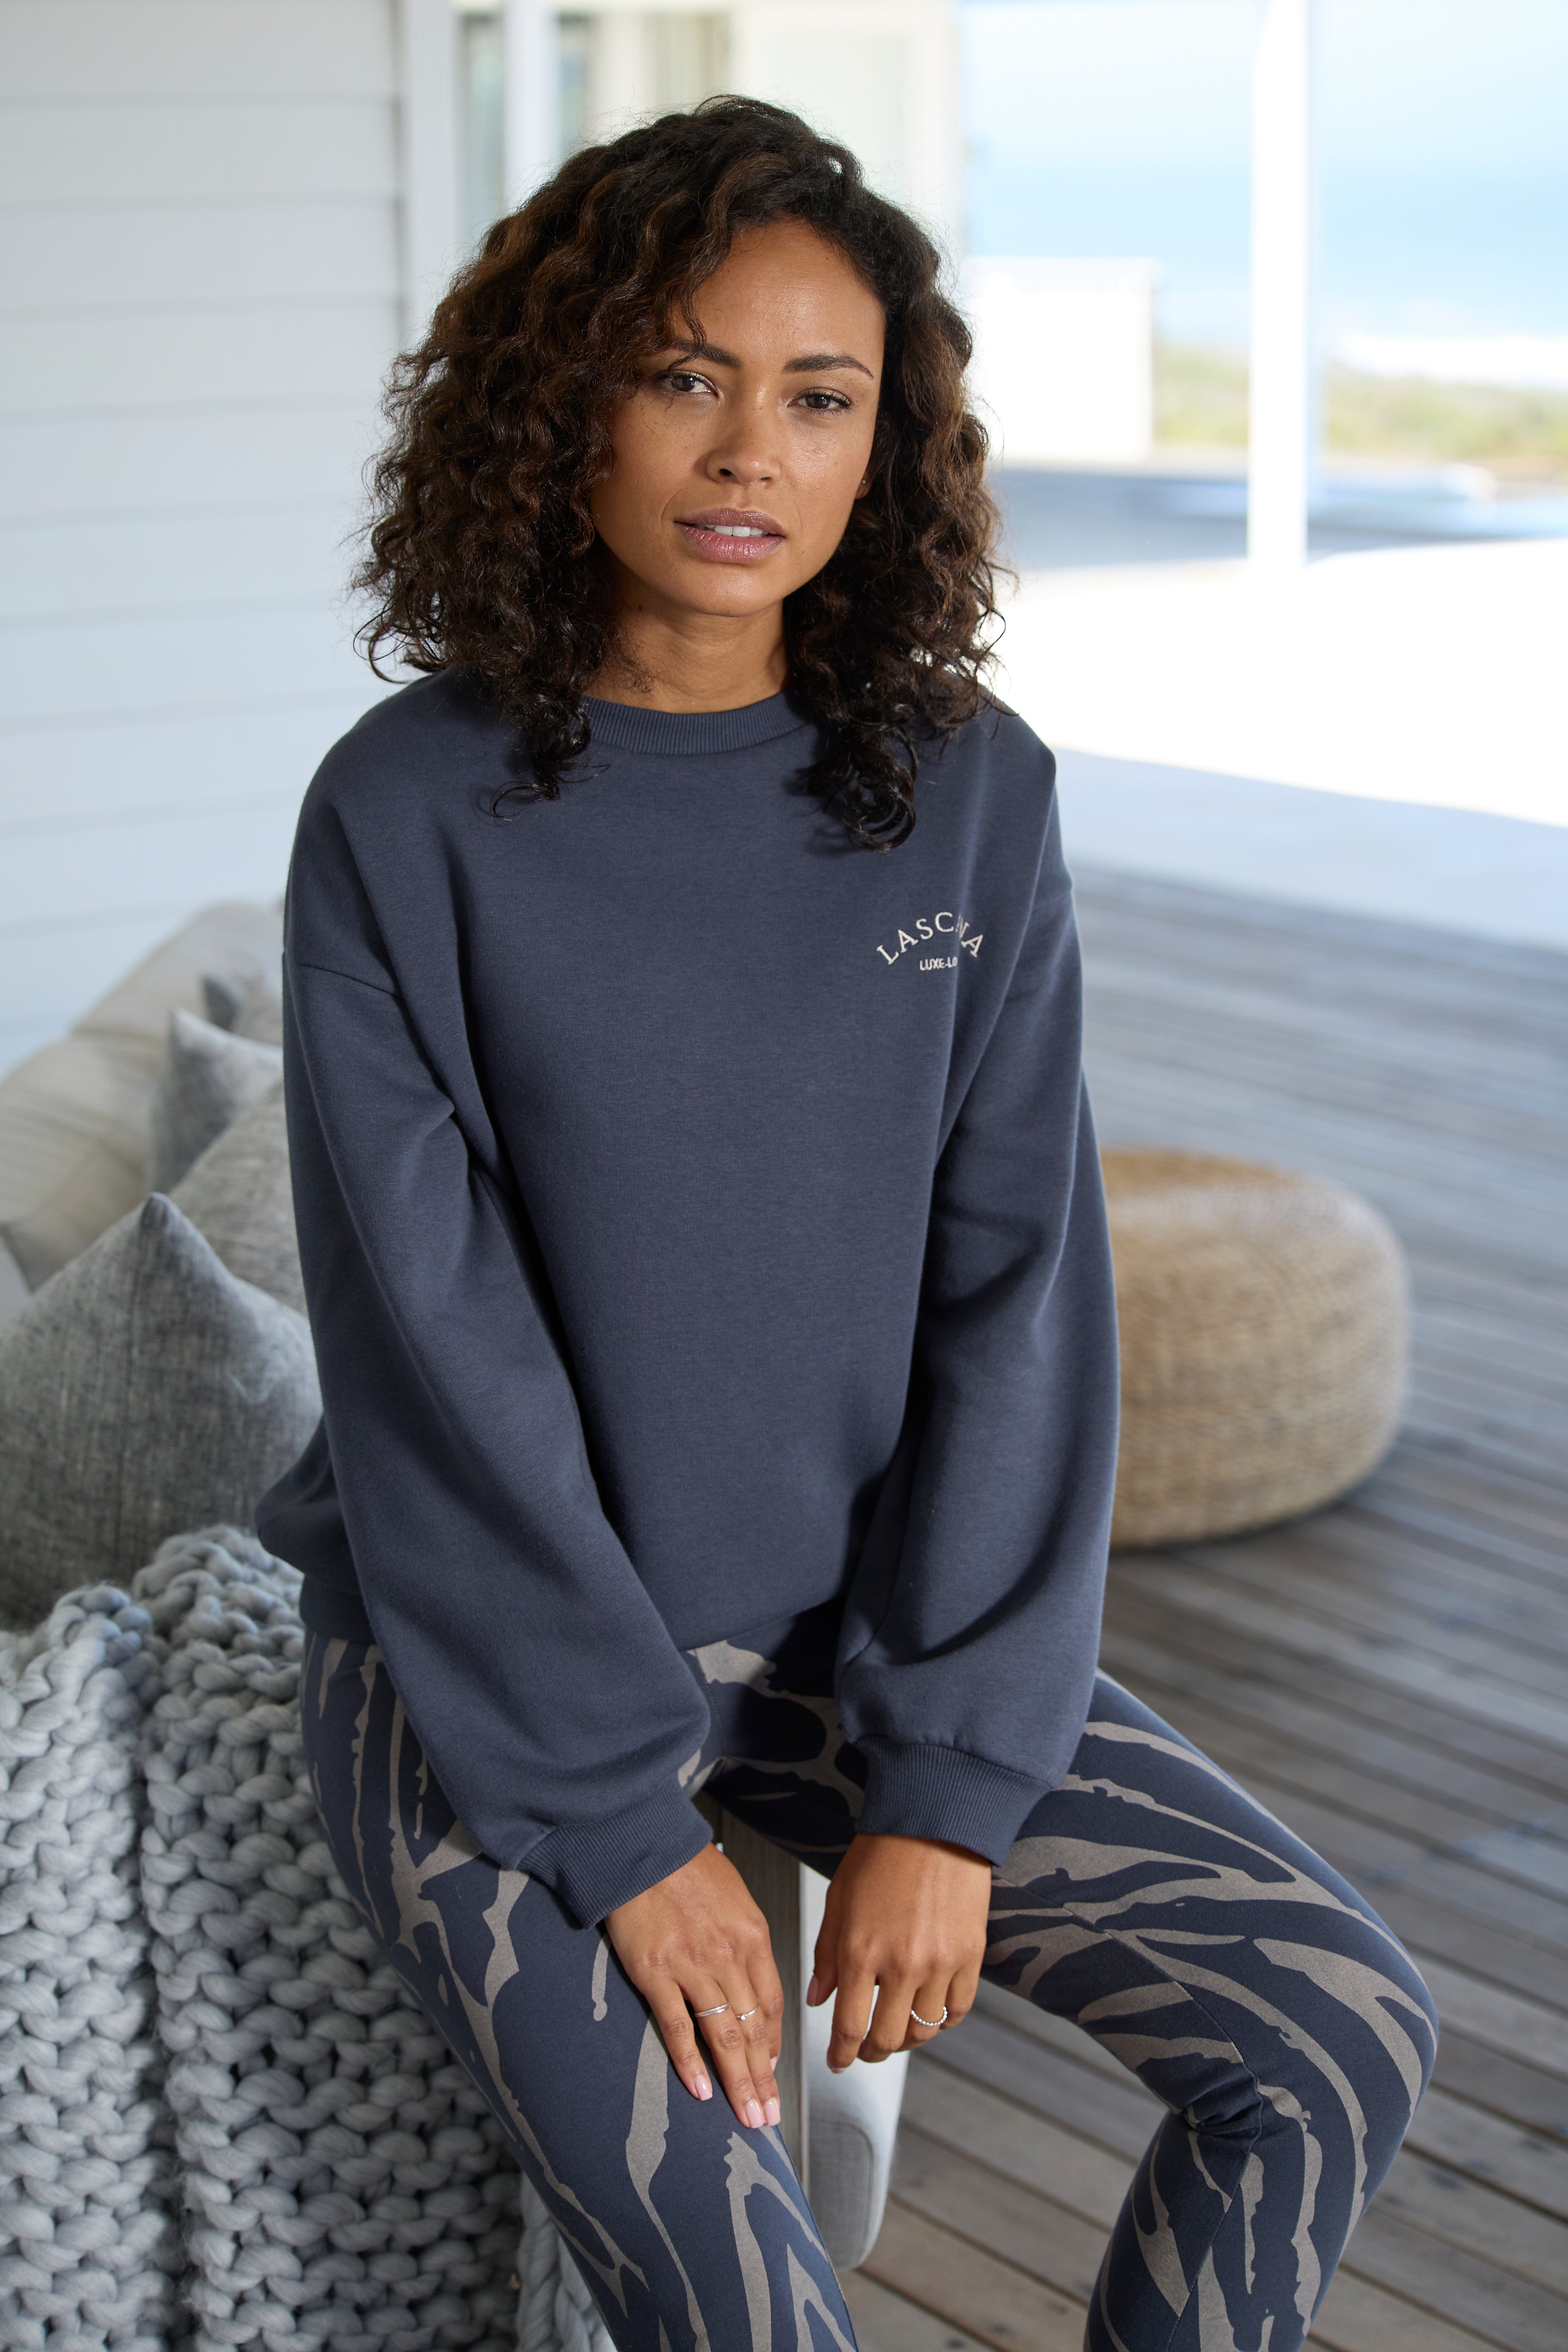 LASCANA Sweatshirt -Pullover mit Ärmeln, Loungewear, anthrazit weiten Loungeanzug